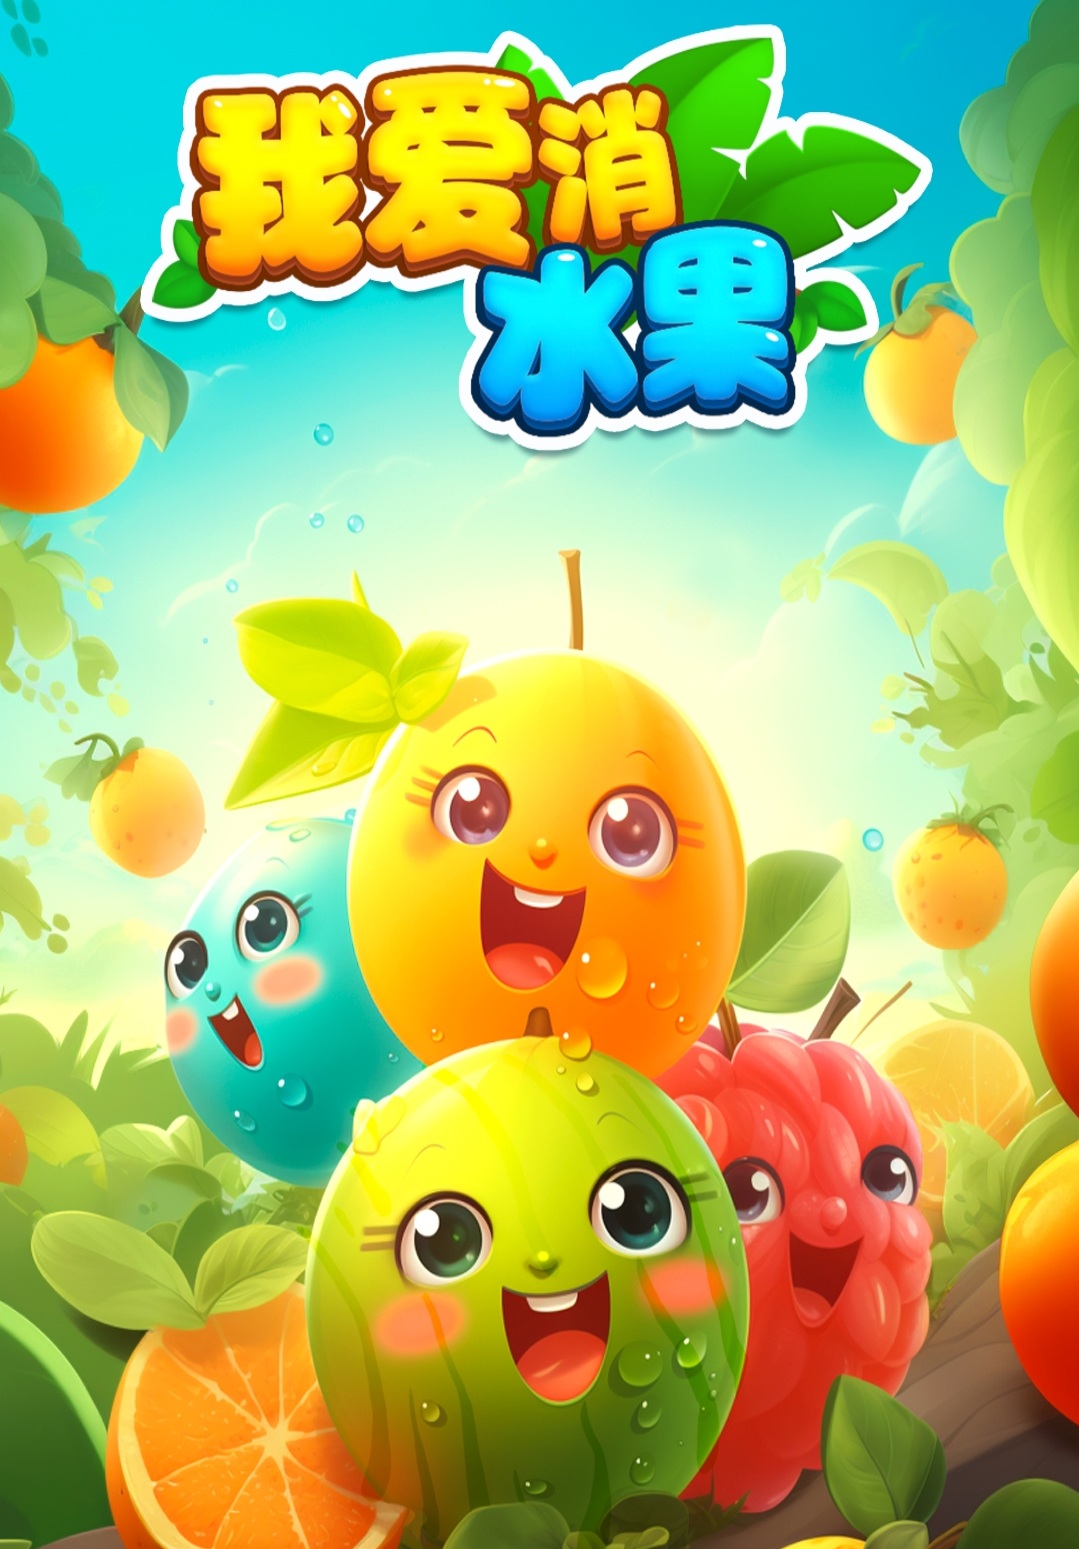 【光年游戏】我爱消水果，光年家7月21日推出的小游戏，消除系列